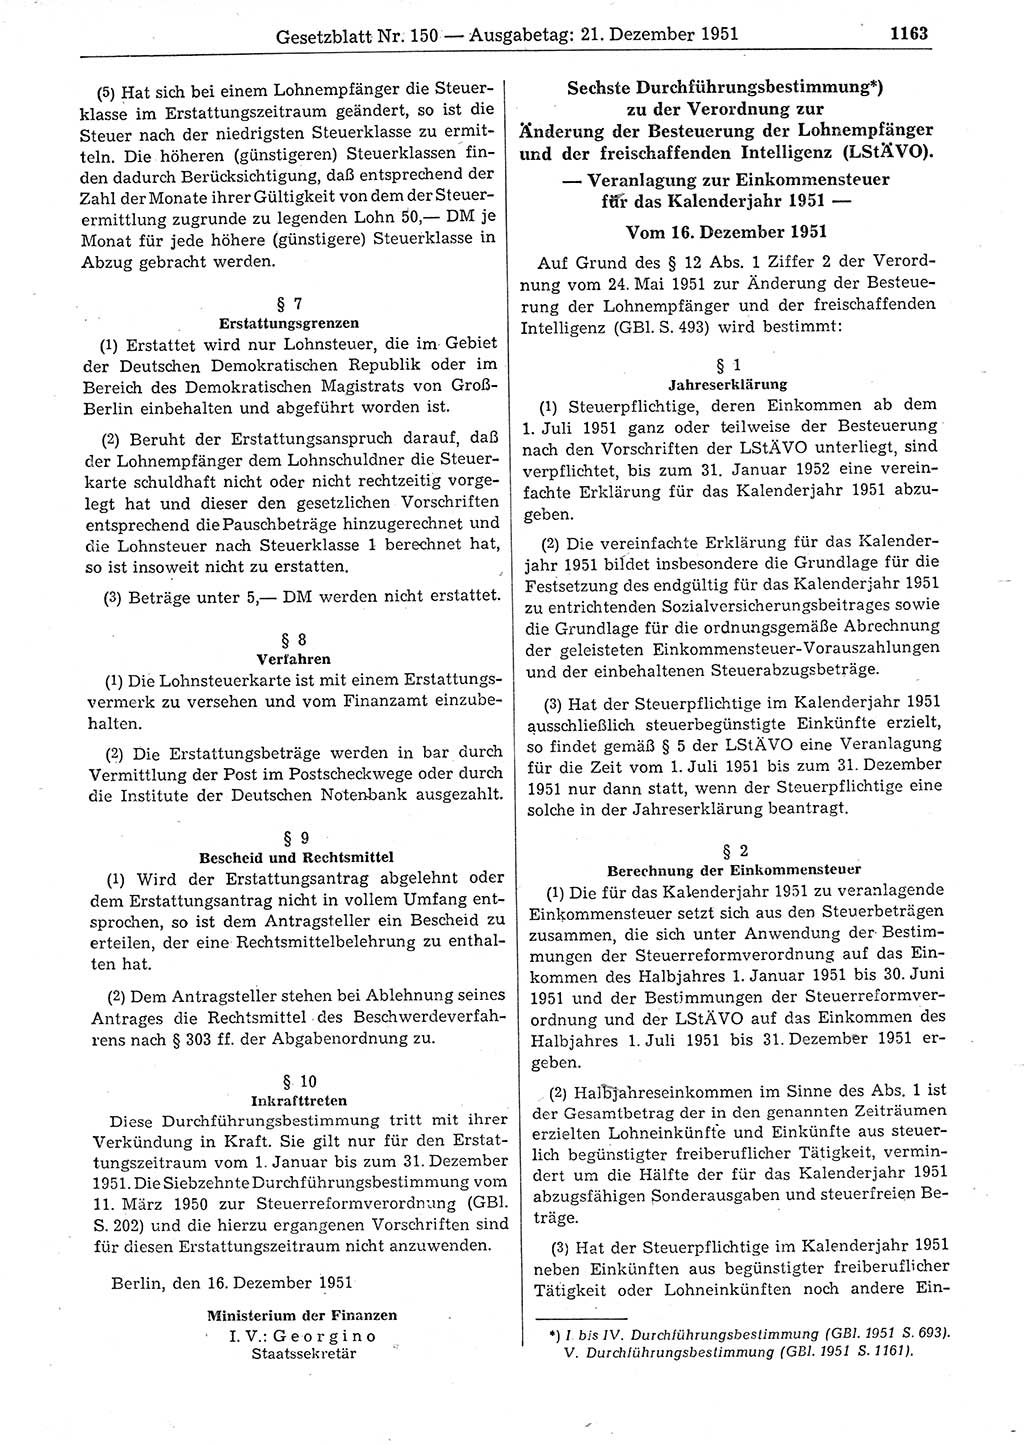 Gesetzblatt (GBl.) der Deutschen Demokratischen Republik (DDR) 1951, Seite 1165 (GBl. DDR 1951, S. 1165)